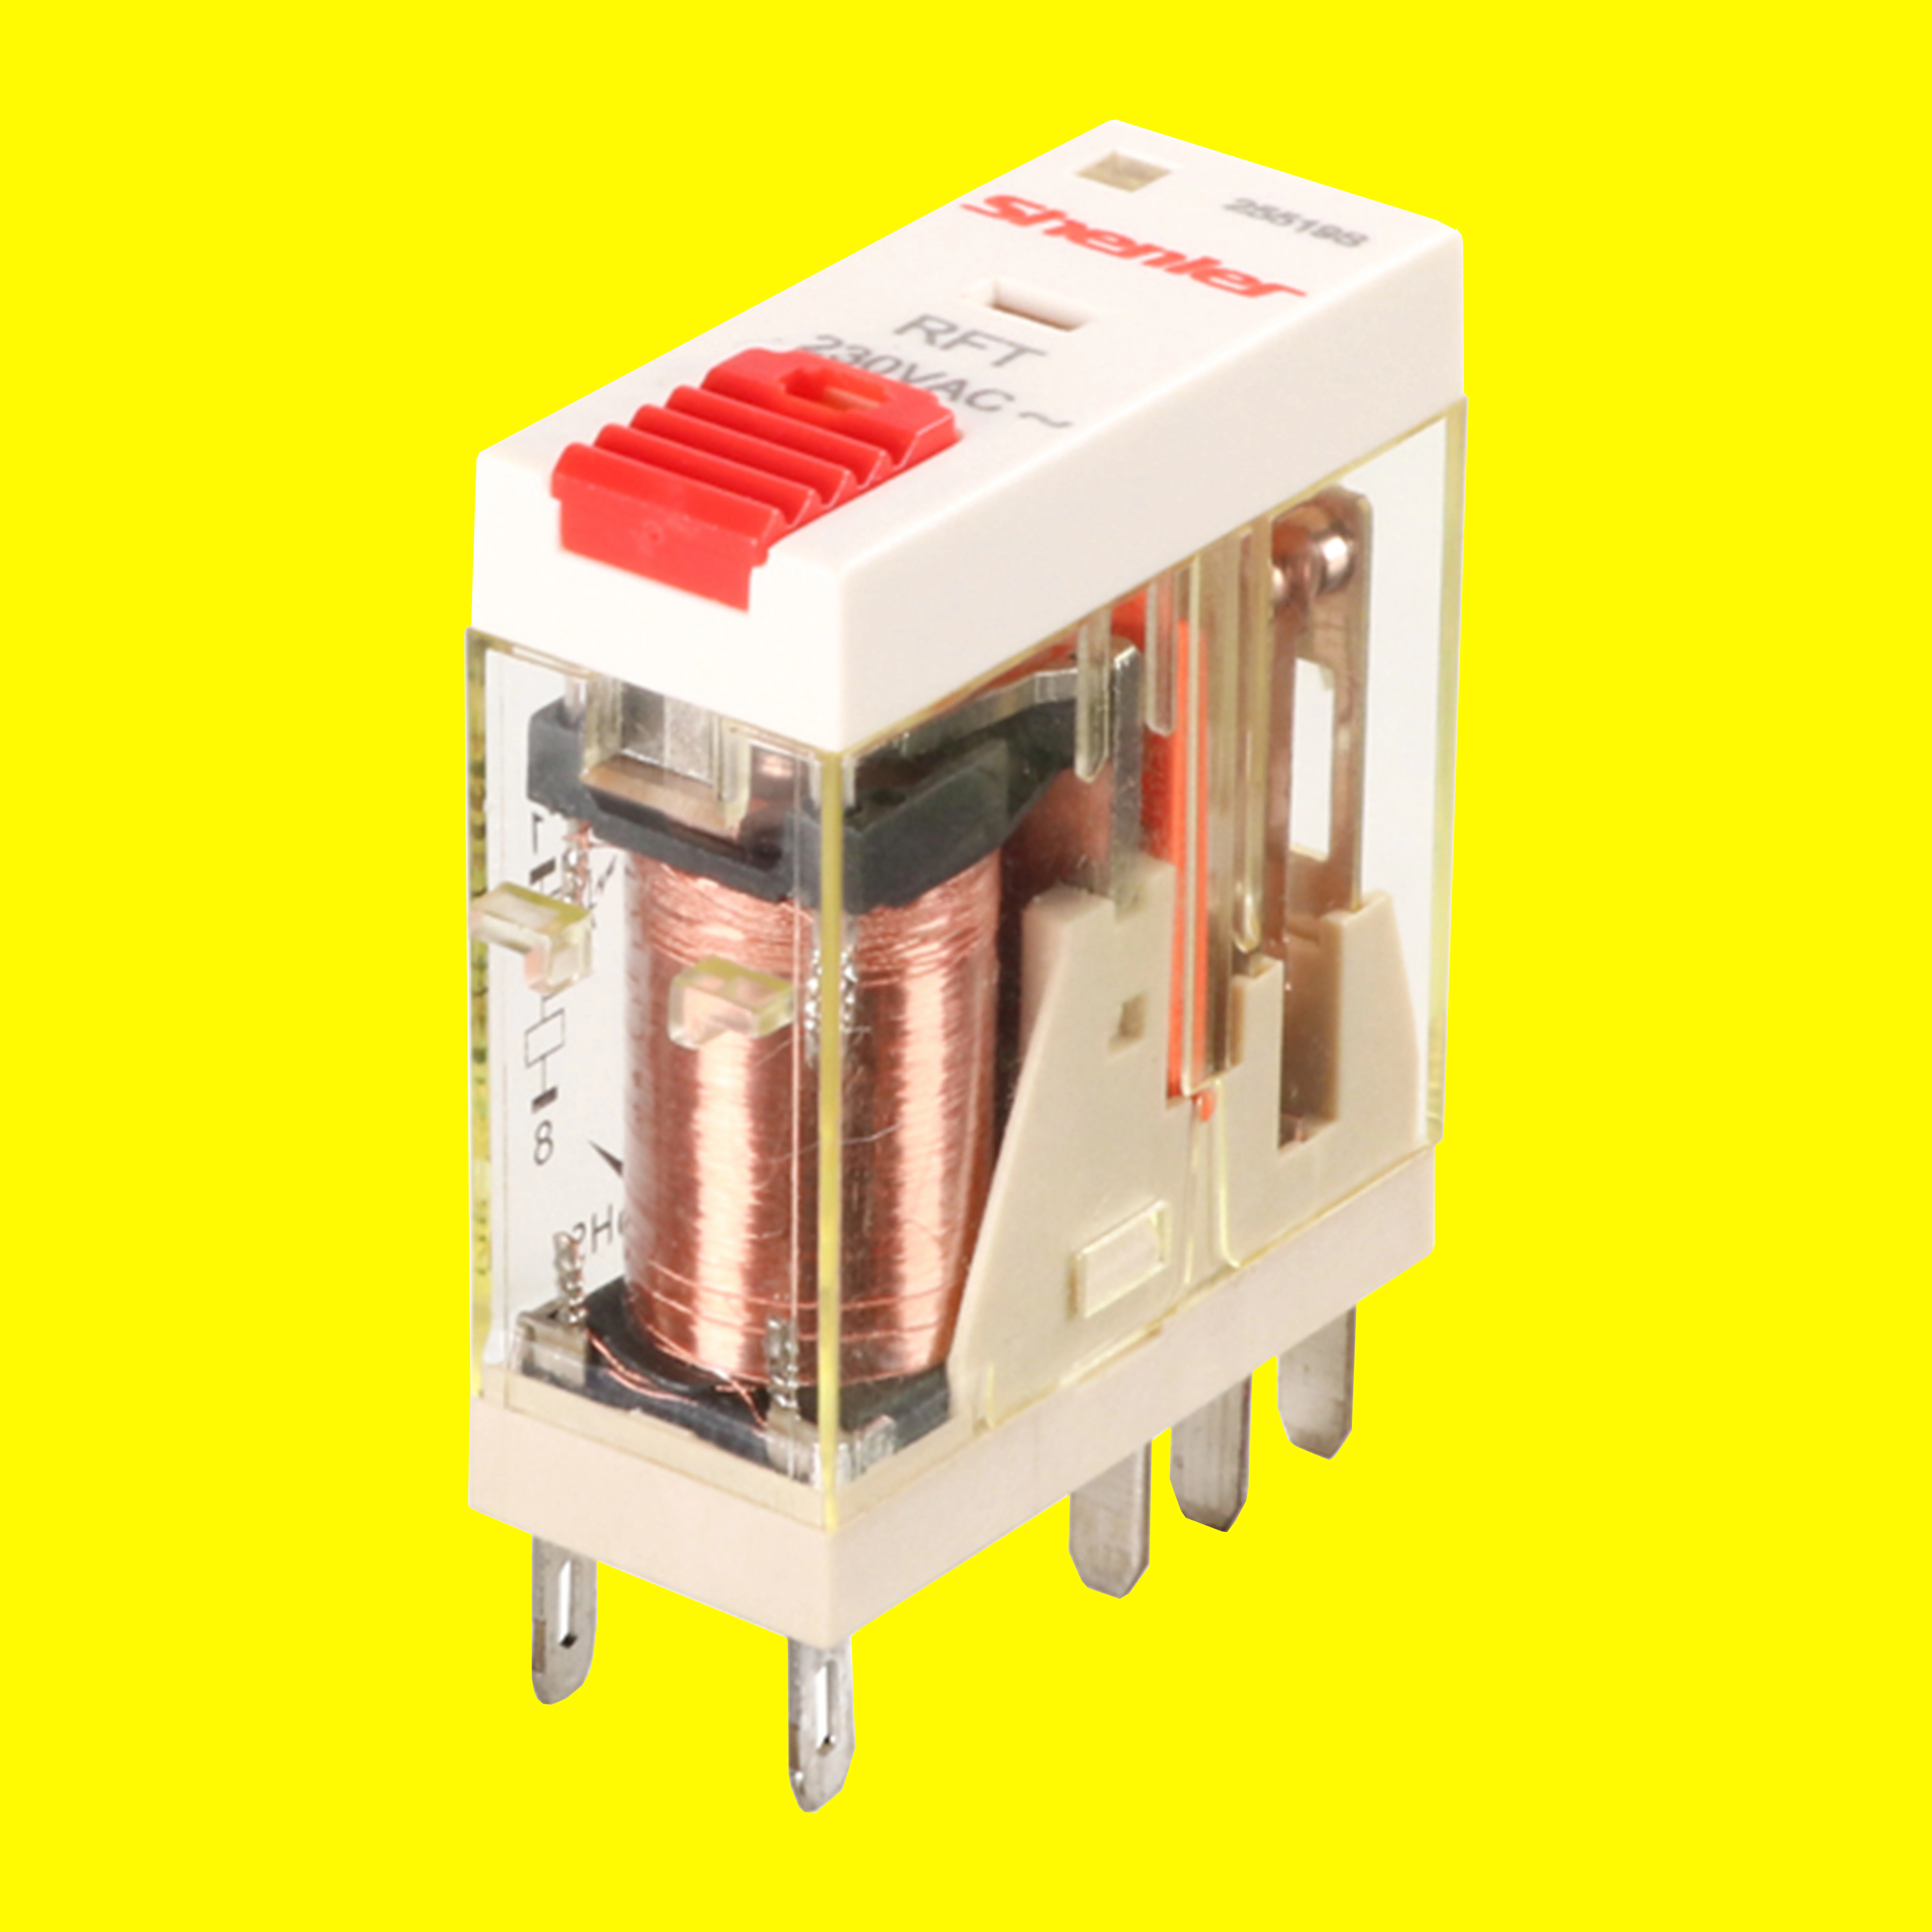 Интерфейсное реле Shenler RFT2CO730LT 2 полюса 8A 230 В переменного тока, интеллектуальное устройство для автоматизации тонких реле 0